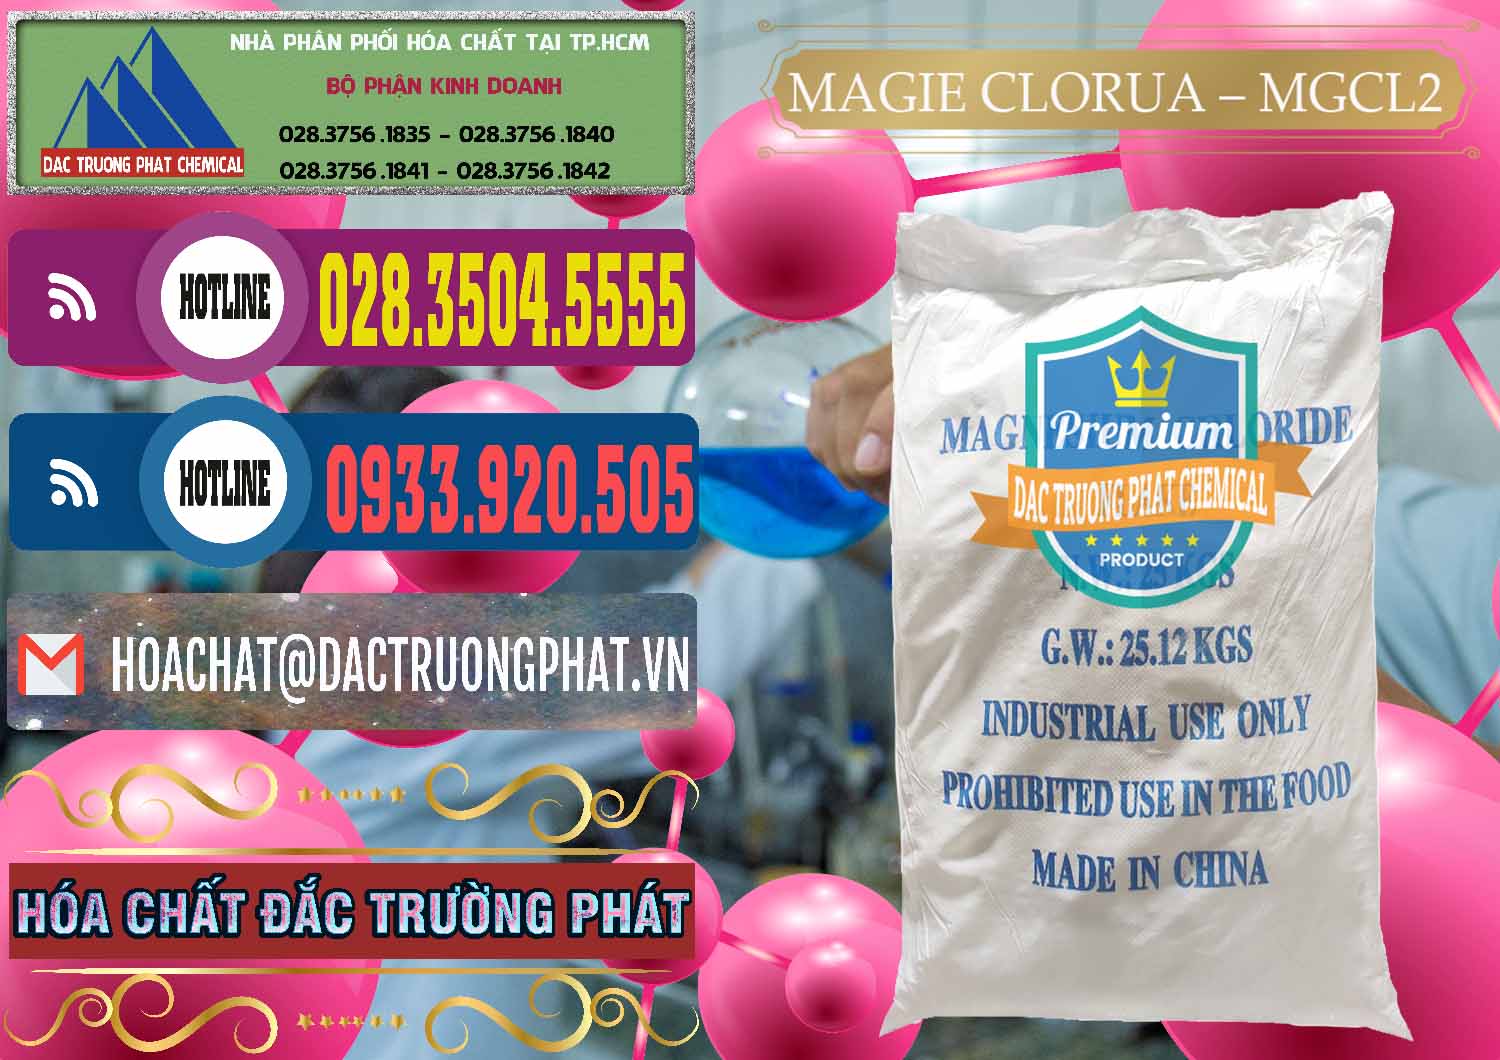 Nơi chuyên cung cấp - bán Magie Clorua – MGCL2 96% Dạng Vảy Trung Quốc China - 0091 - Đơn vị chuyên kinh doanh & cung cấp hóa chất tại TP.HCM - muabanhoachat.com.vn